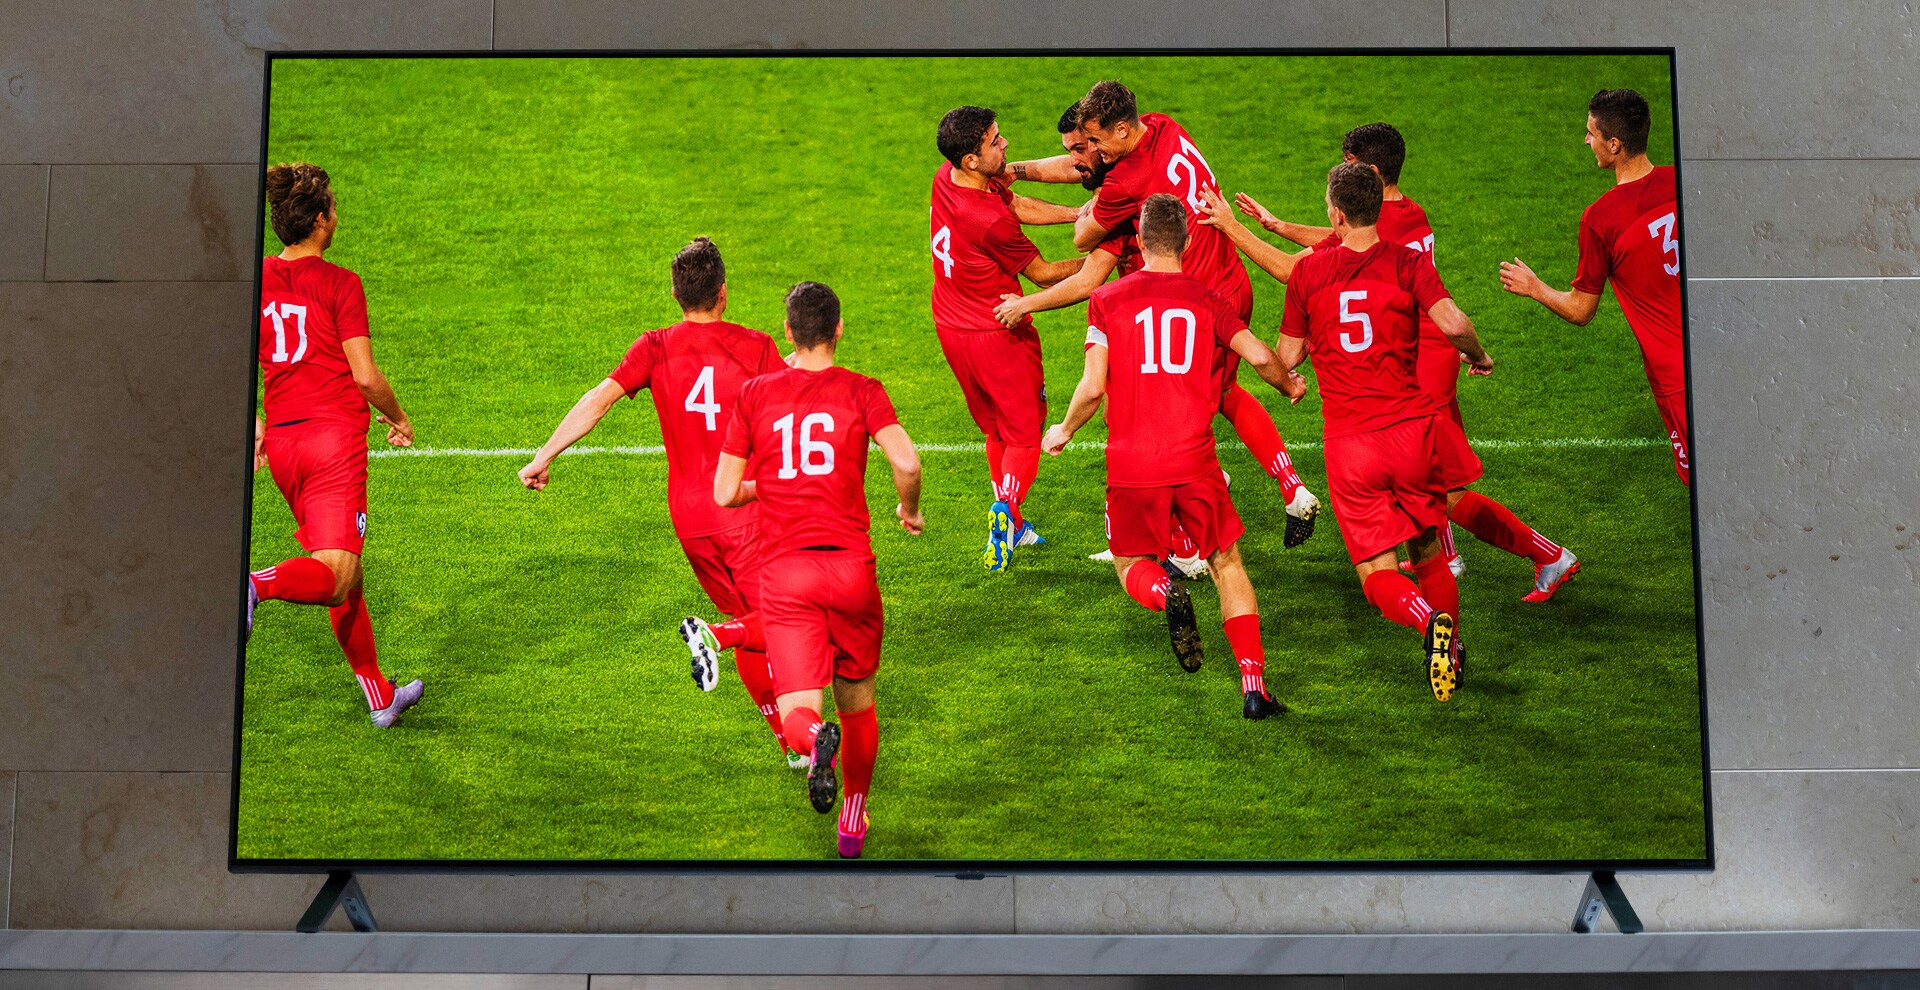 Un téléviseur NanoCell est posé sur un meubl télé. Des joueurs de football se congratulent.